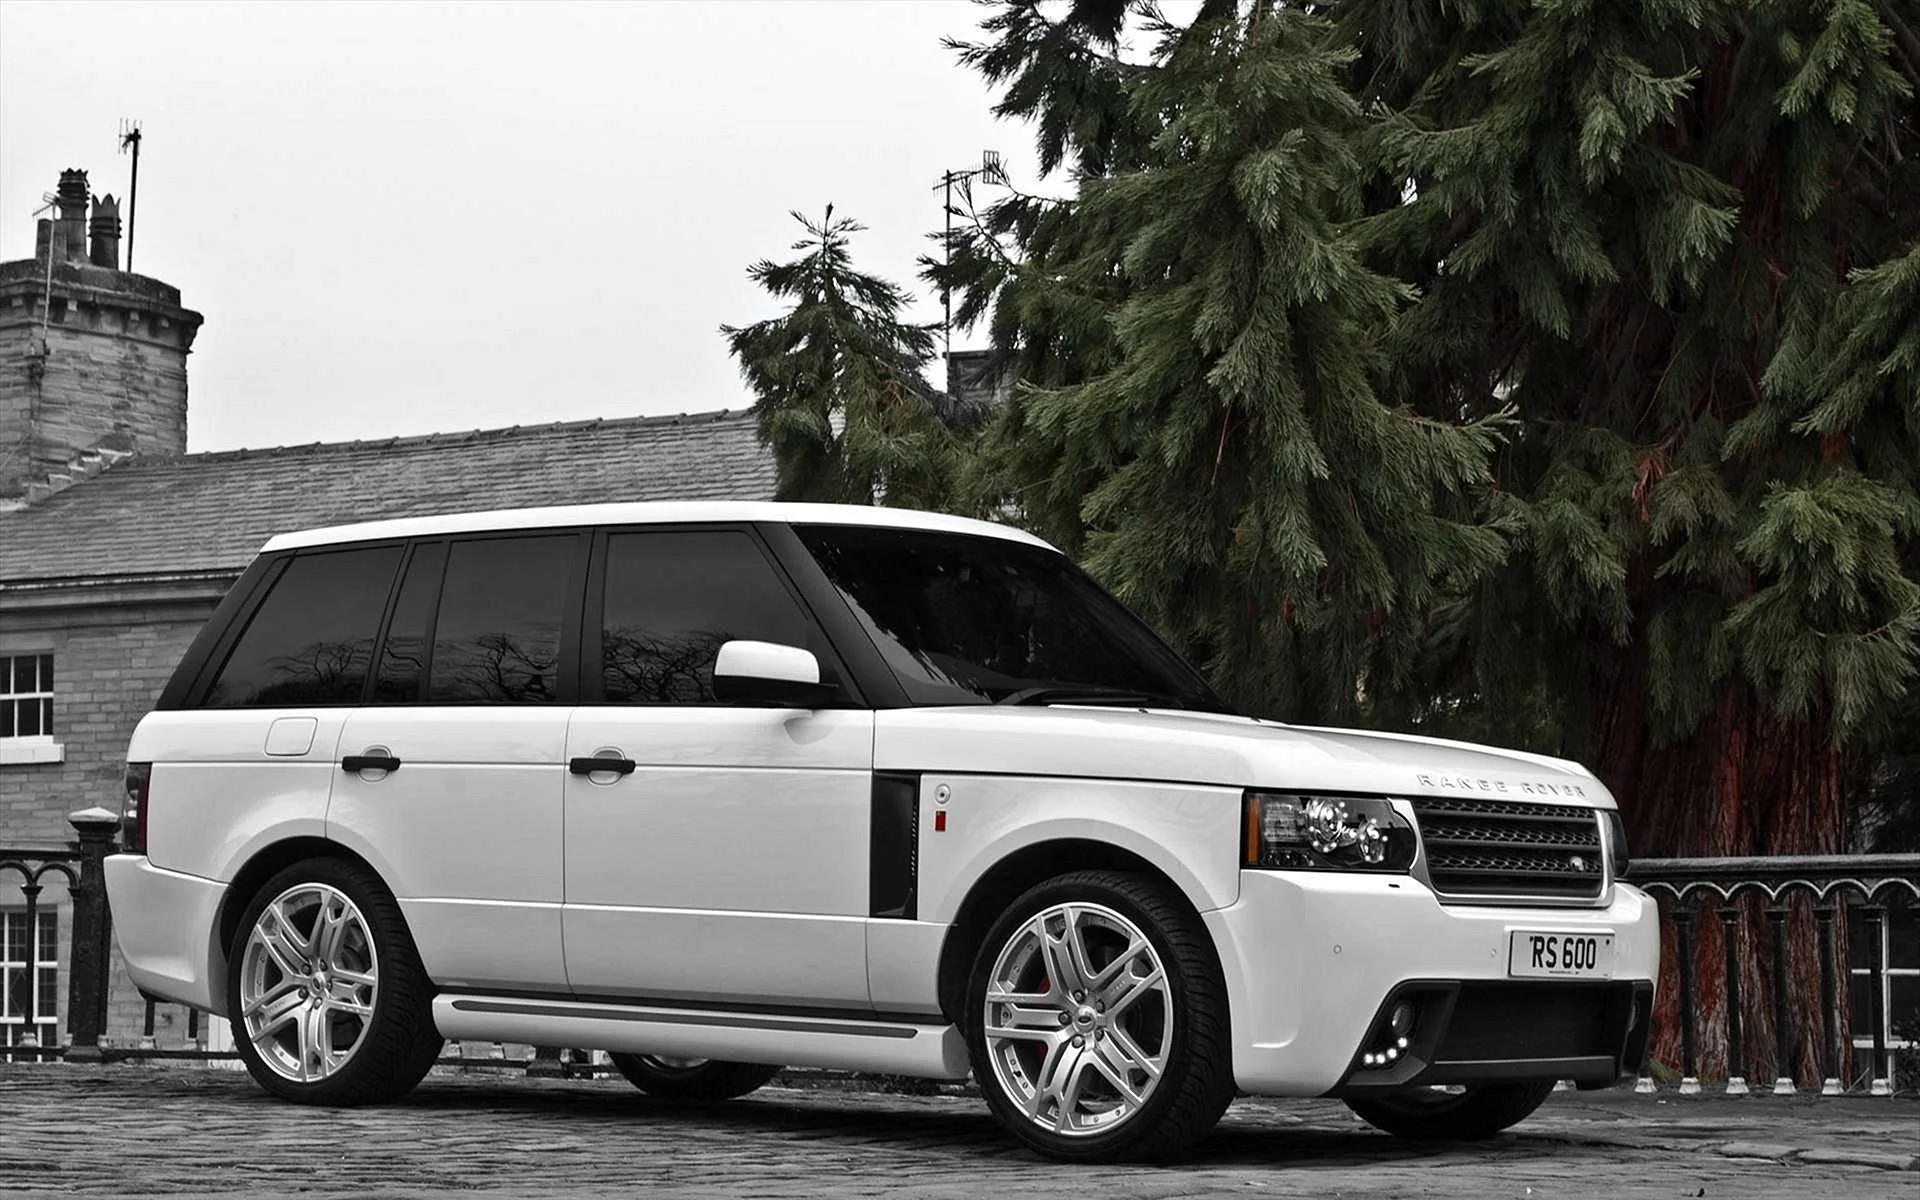 Land Rover Range Rover 2011 White Wallpaper